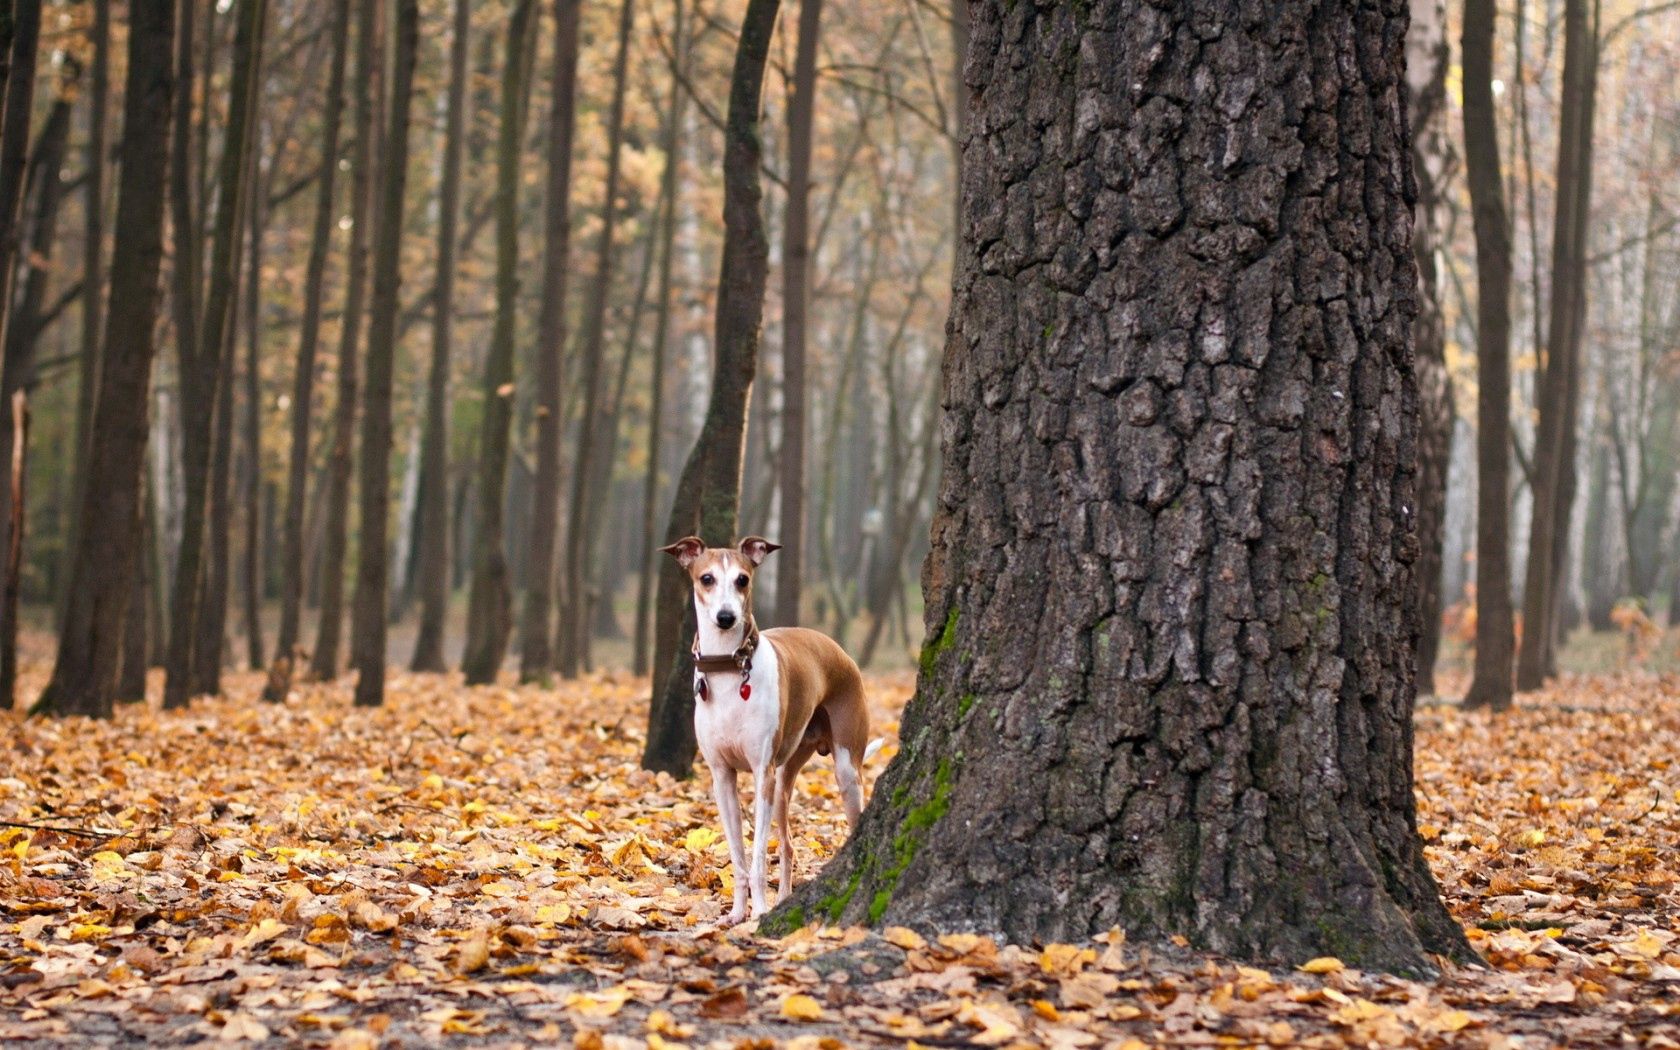 Скачать обои бесплатно Листья, Собака, Животные, Осень картинка на рабочий стол ПК